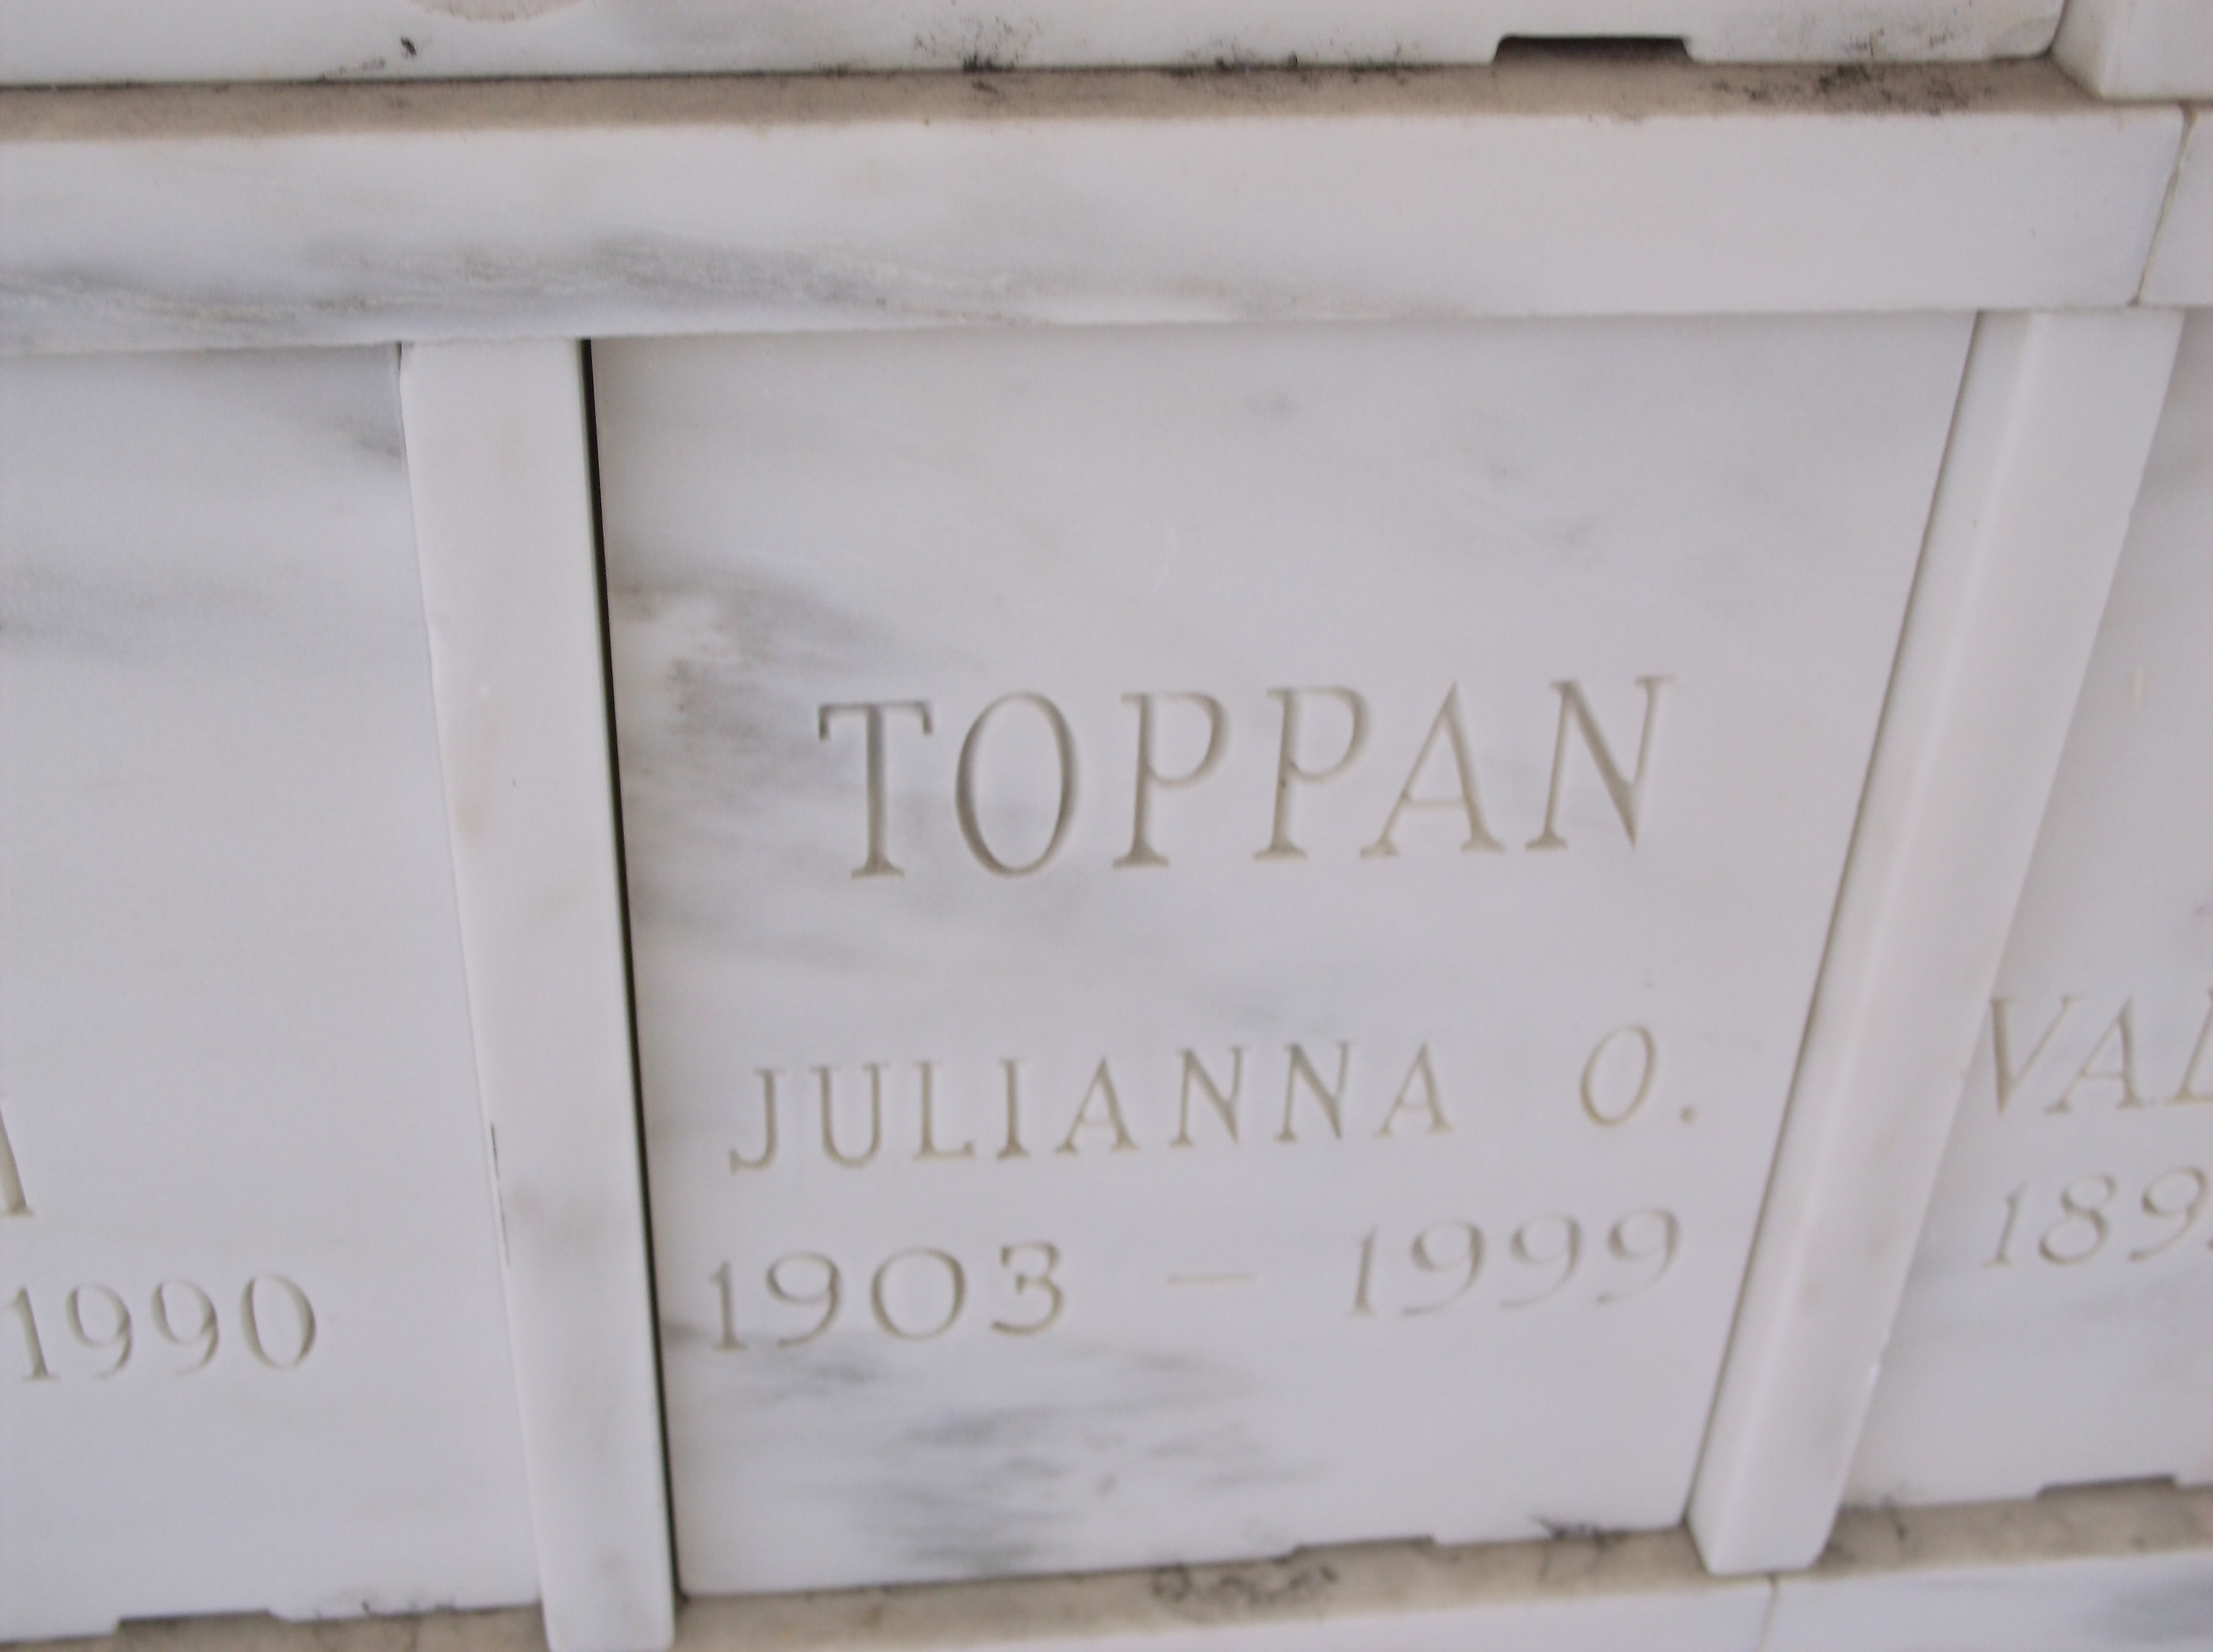 Julianna O Toppan